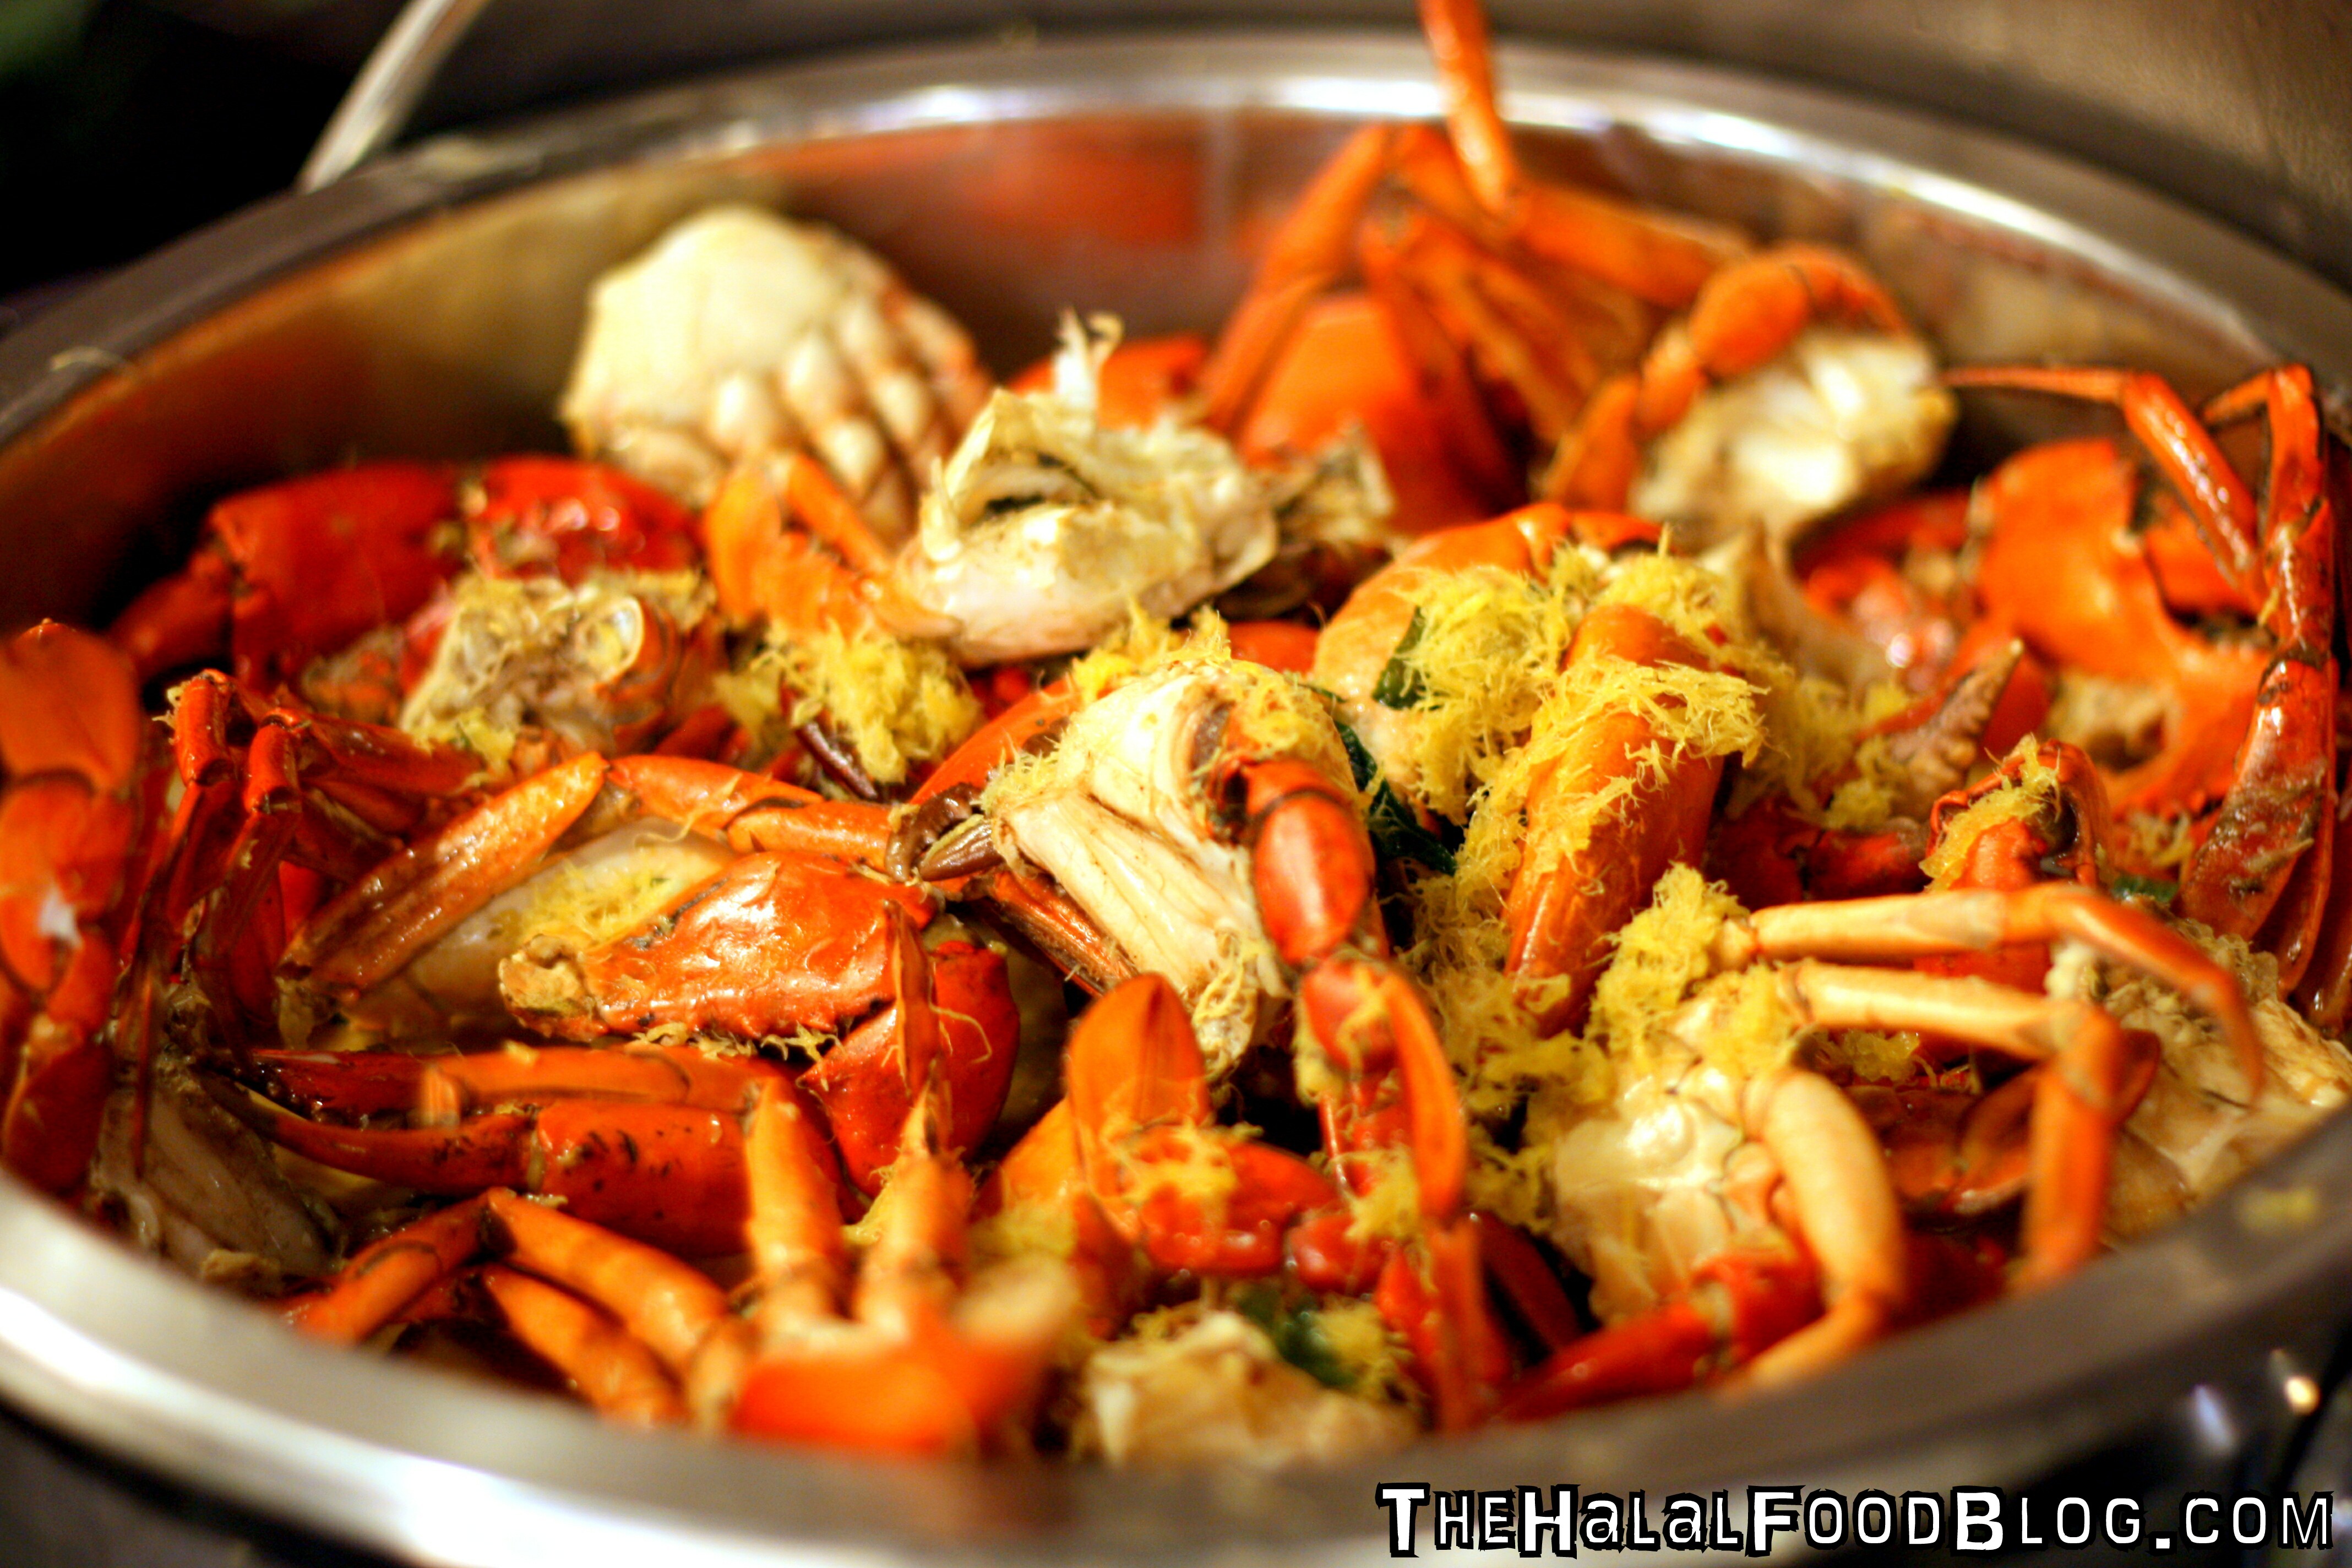 Penang St. Buffet - Crab Madness 2016 - The Halal Food Blog